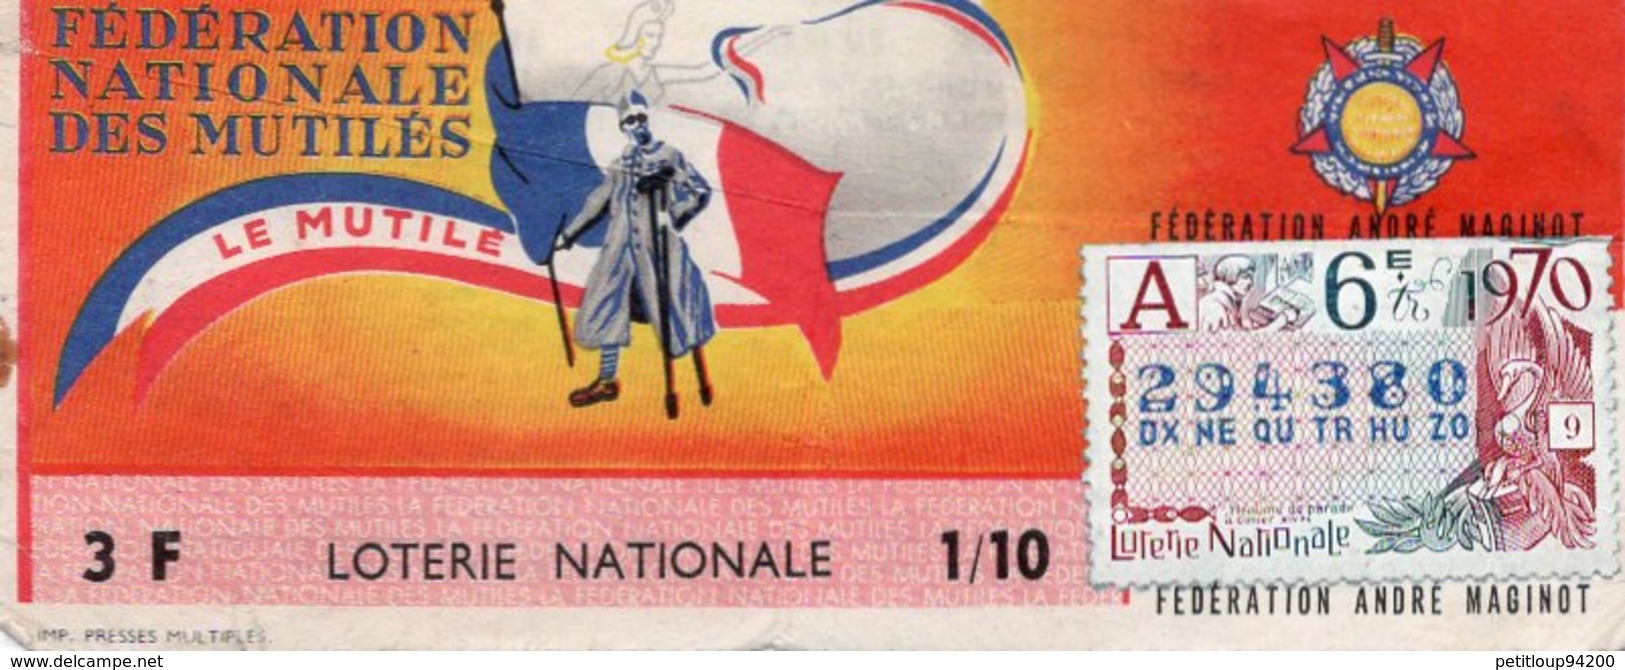 BILLET  DE  LOTERIE  FEDERATION NATIONALE DES MUTILES Le Mutilé 1970 - Billets De Loterie